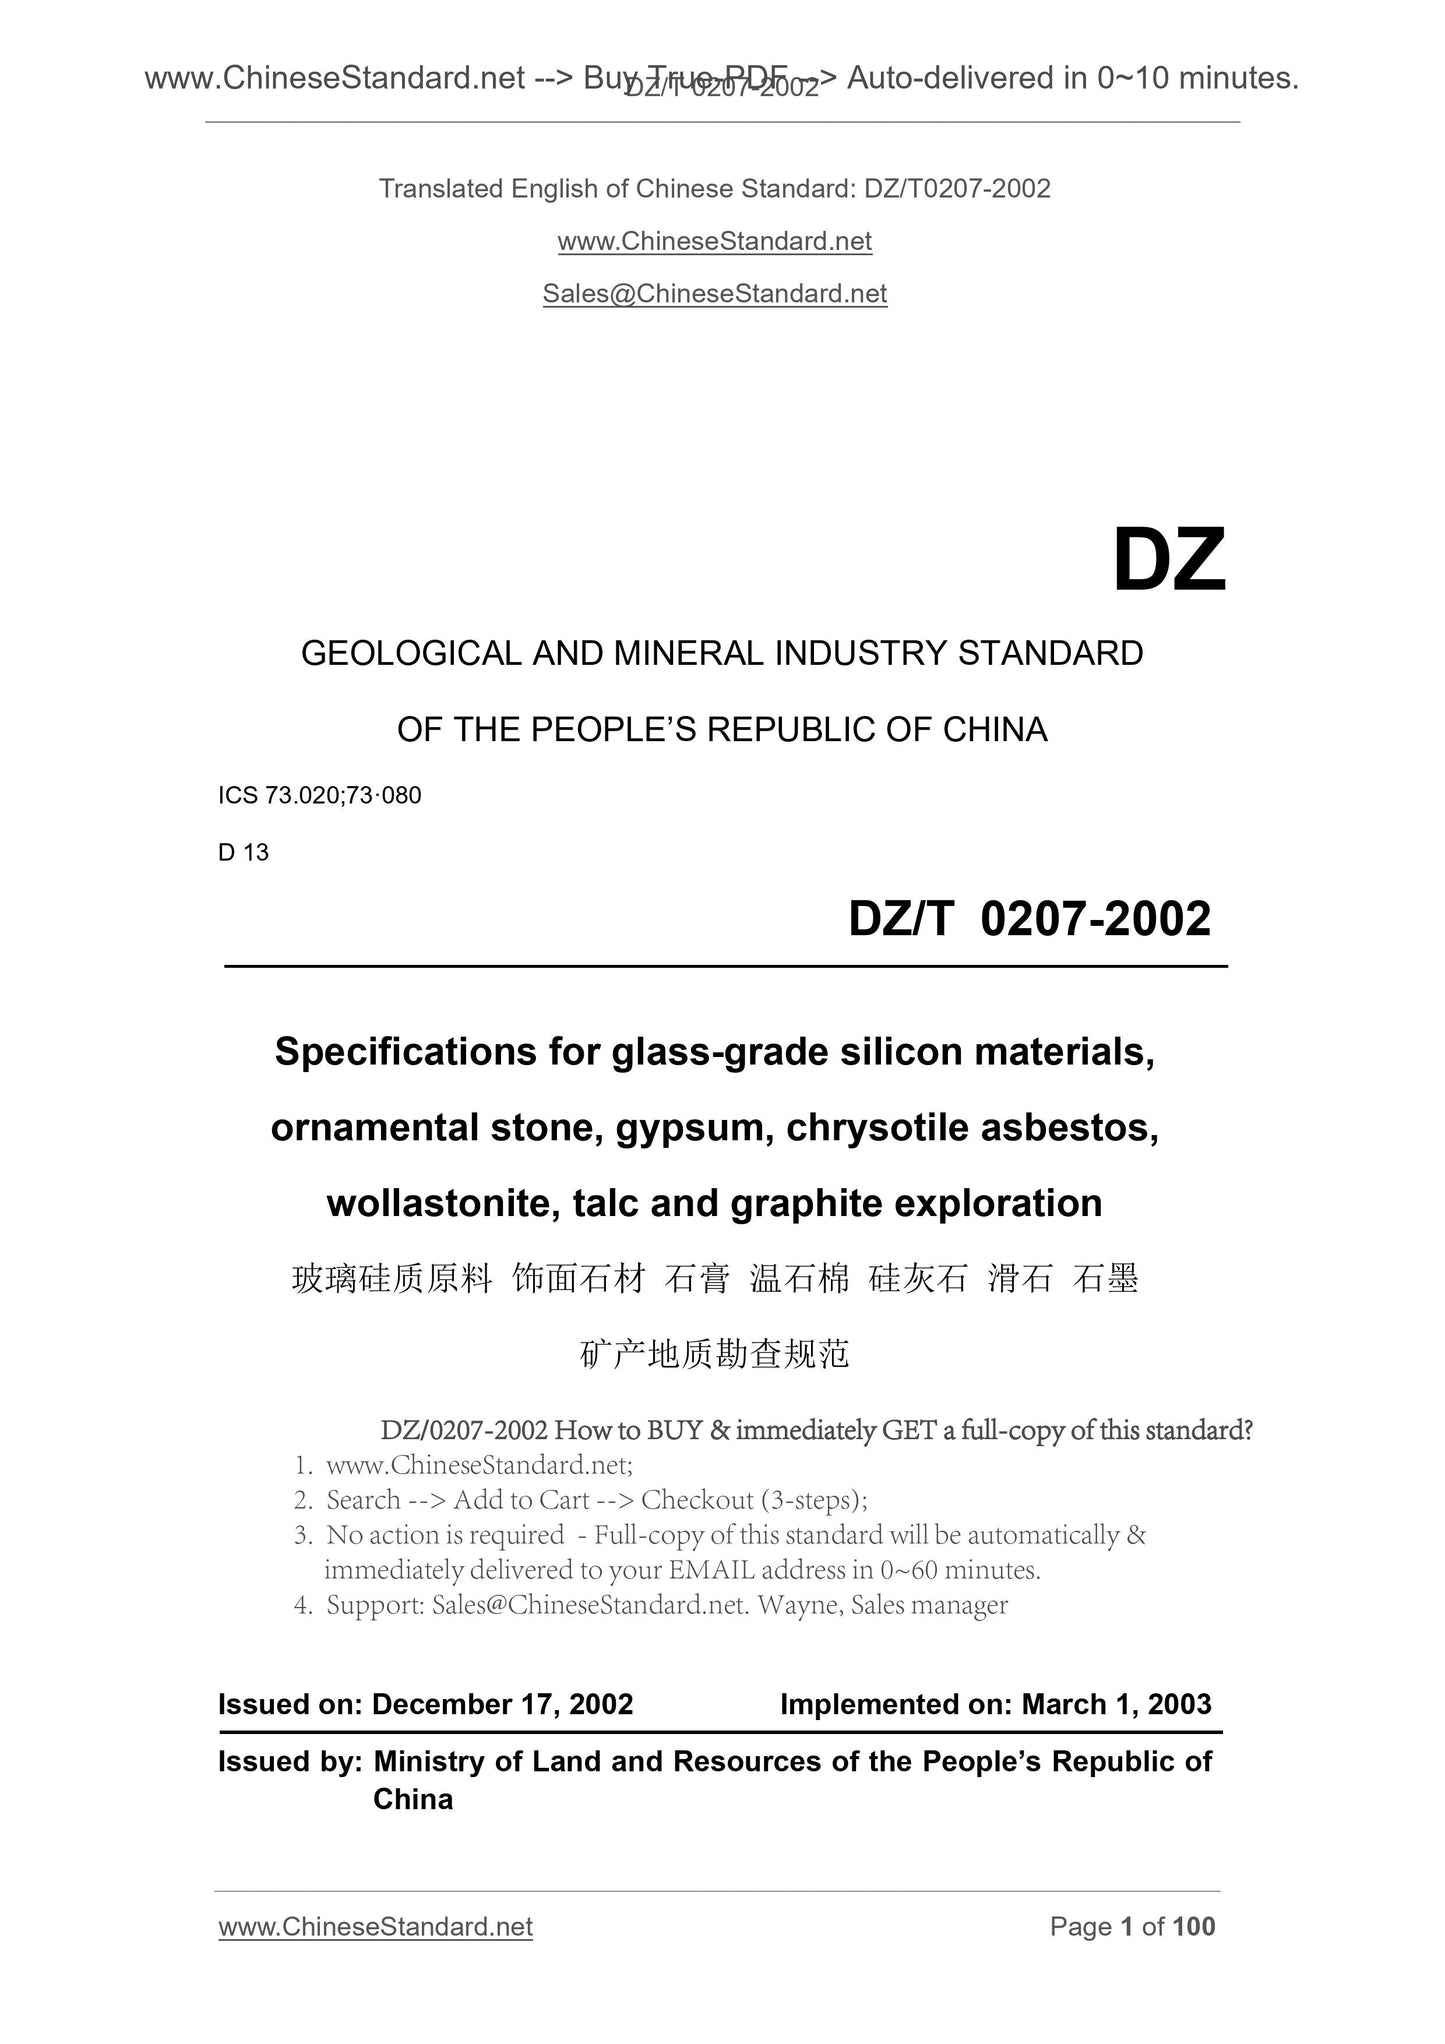 DZ/T 0207-2002 Page 1